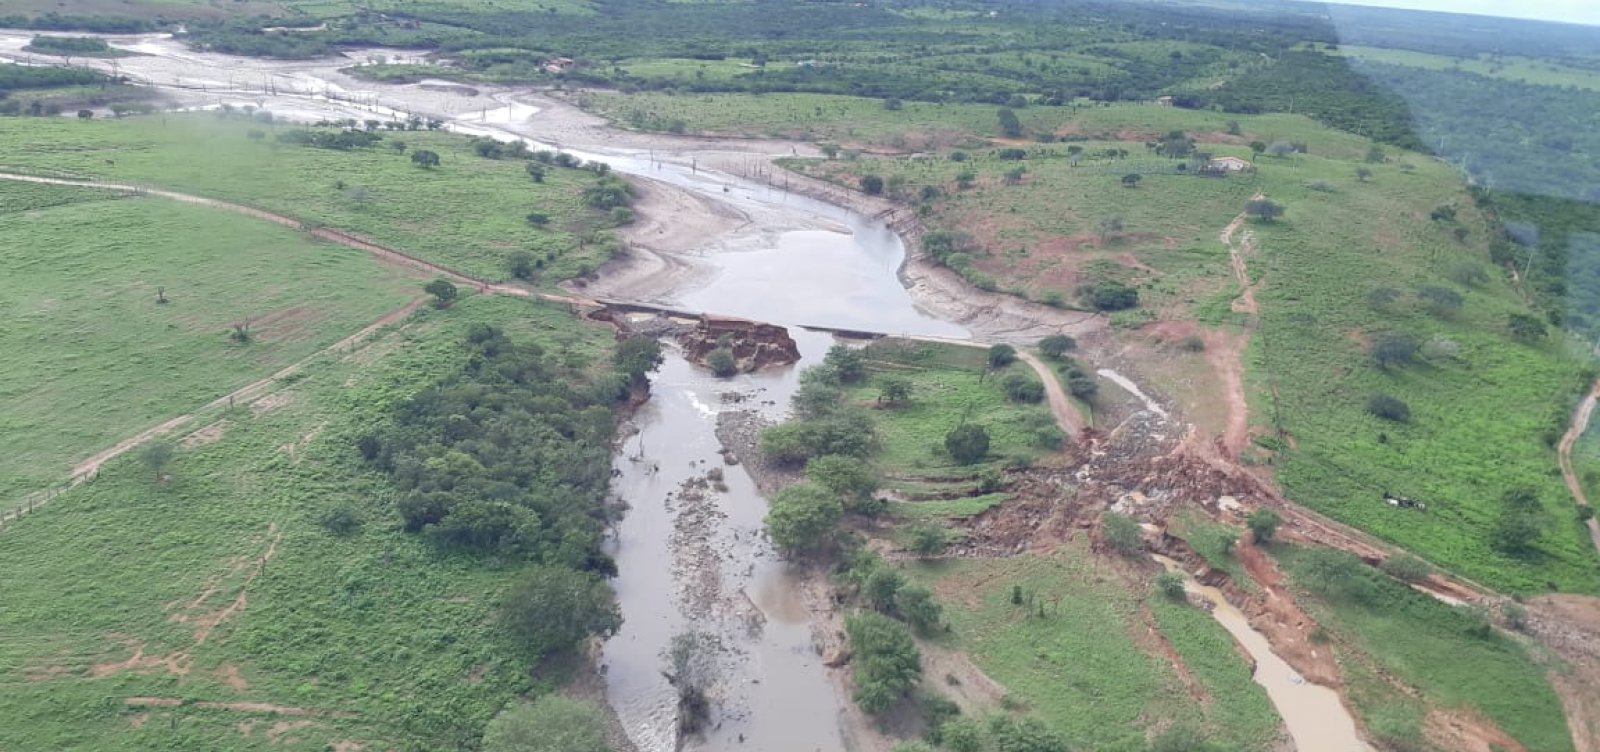 MP-BA investiga possível omissão do governo após rompimento de barragens